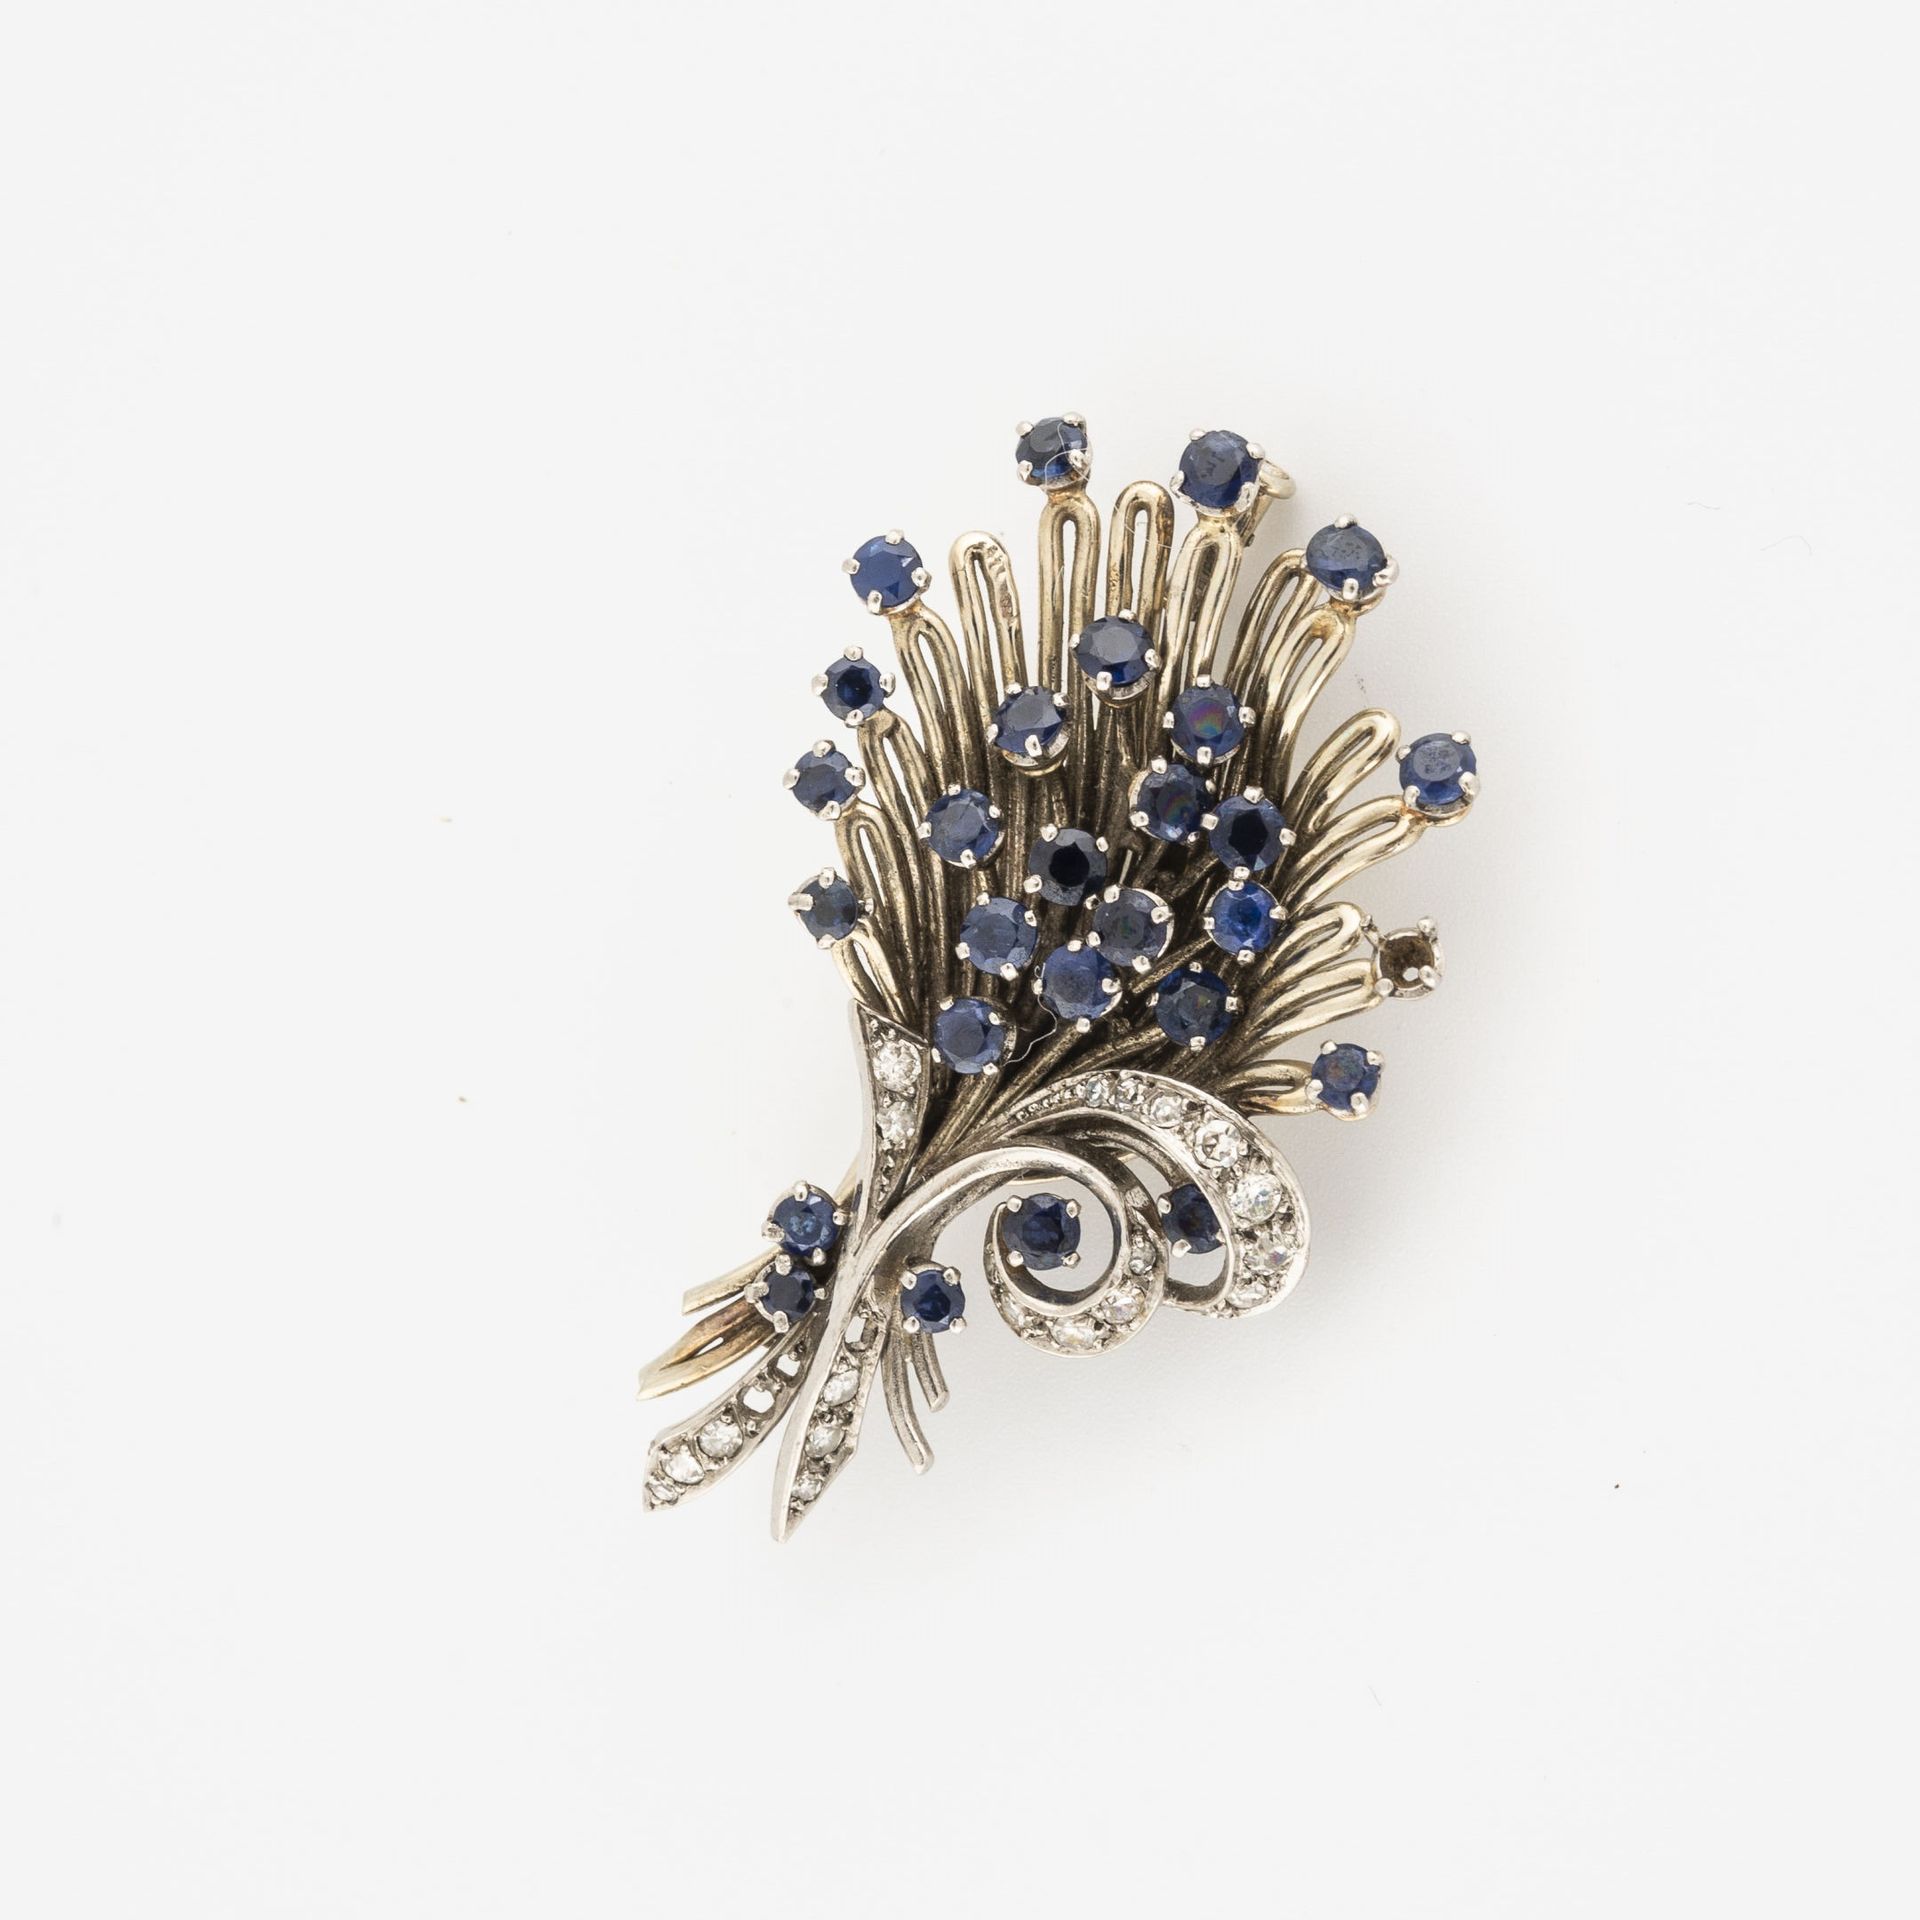 Null 白金（750）和铂金（850）丝状胸针，镶有圆形刻面的天然或合成蓝宝石，并以爪状或粒状的圆形刻面白宝石点缀。

白金针（750）。

毛重：15.7克&hellip;